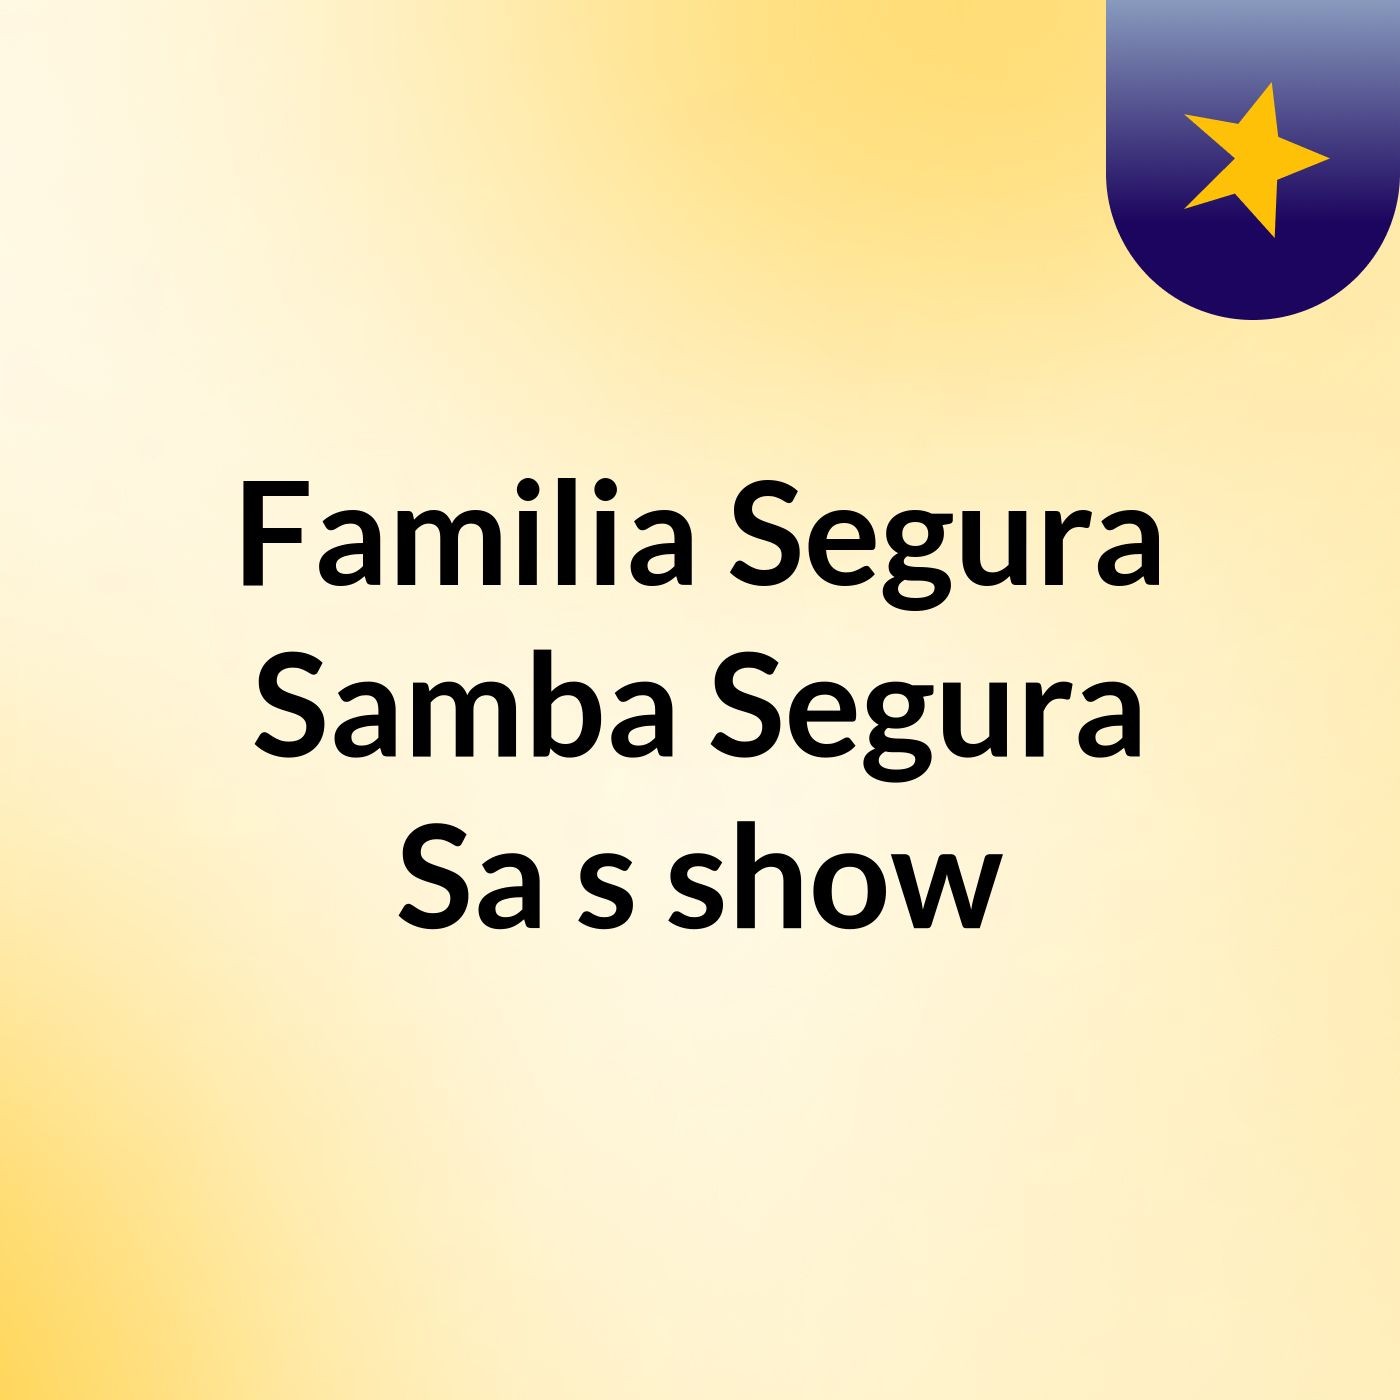 Familia Segura Samba Segura Sa's show